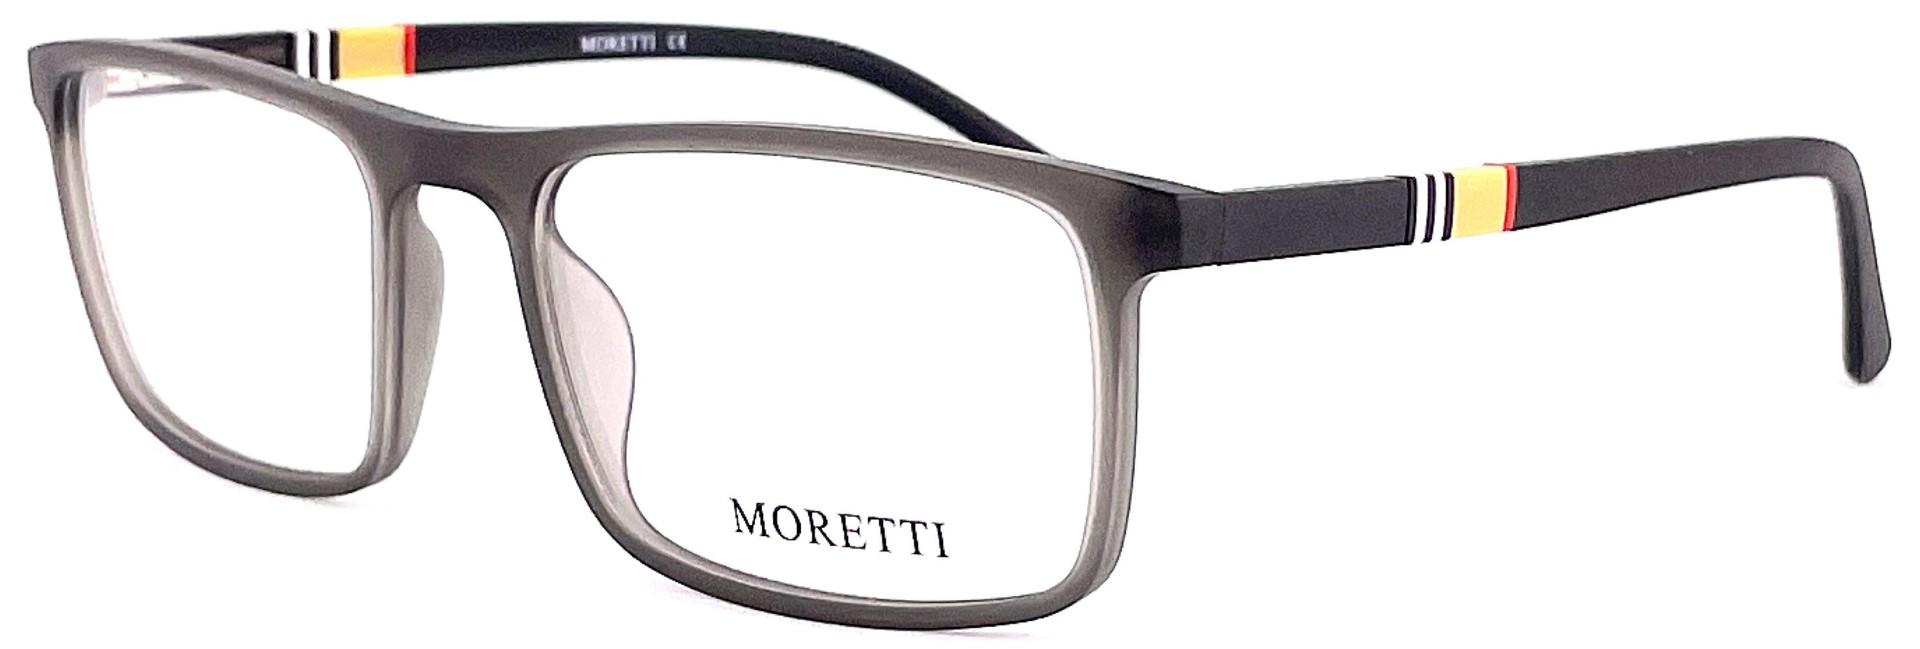 Moretti MF03-06 C.02 2